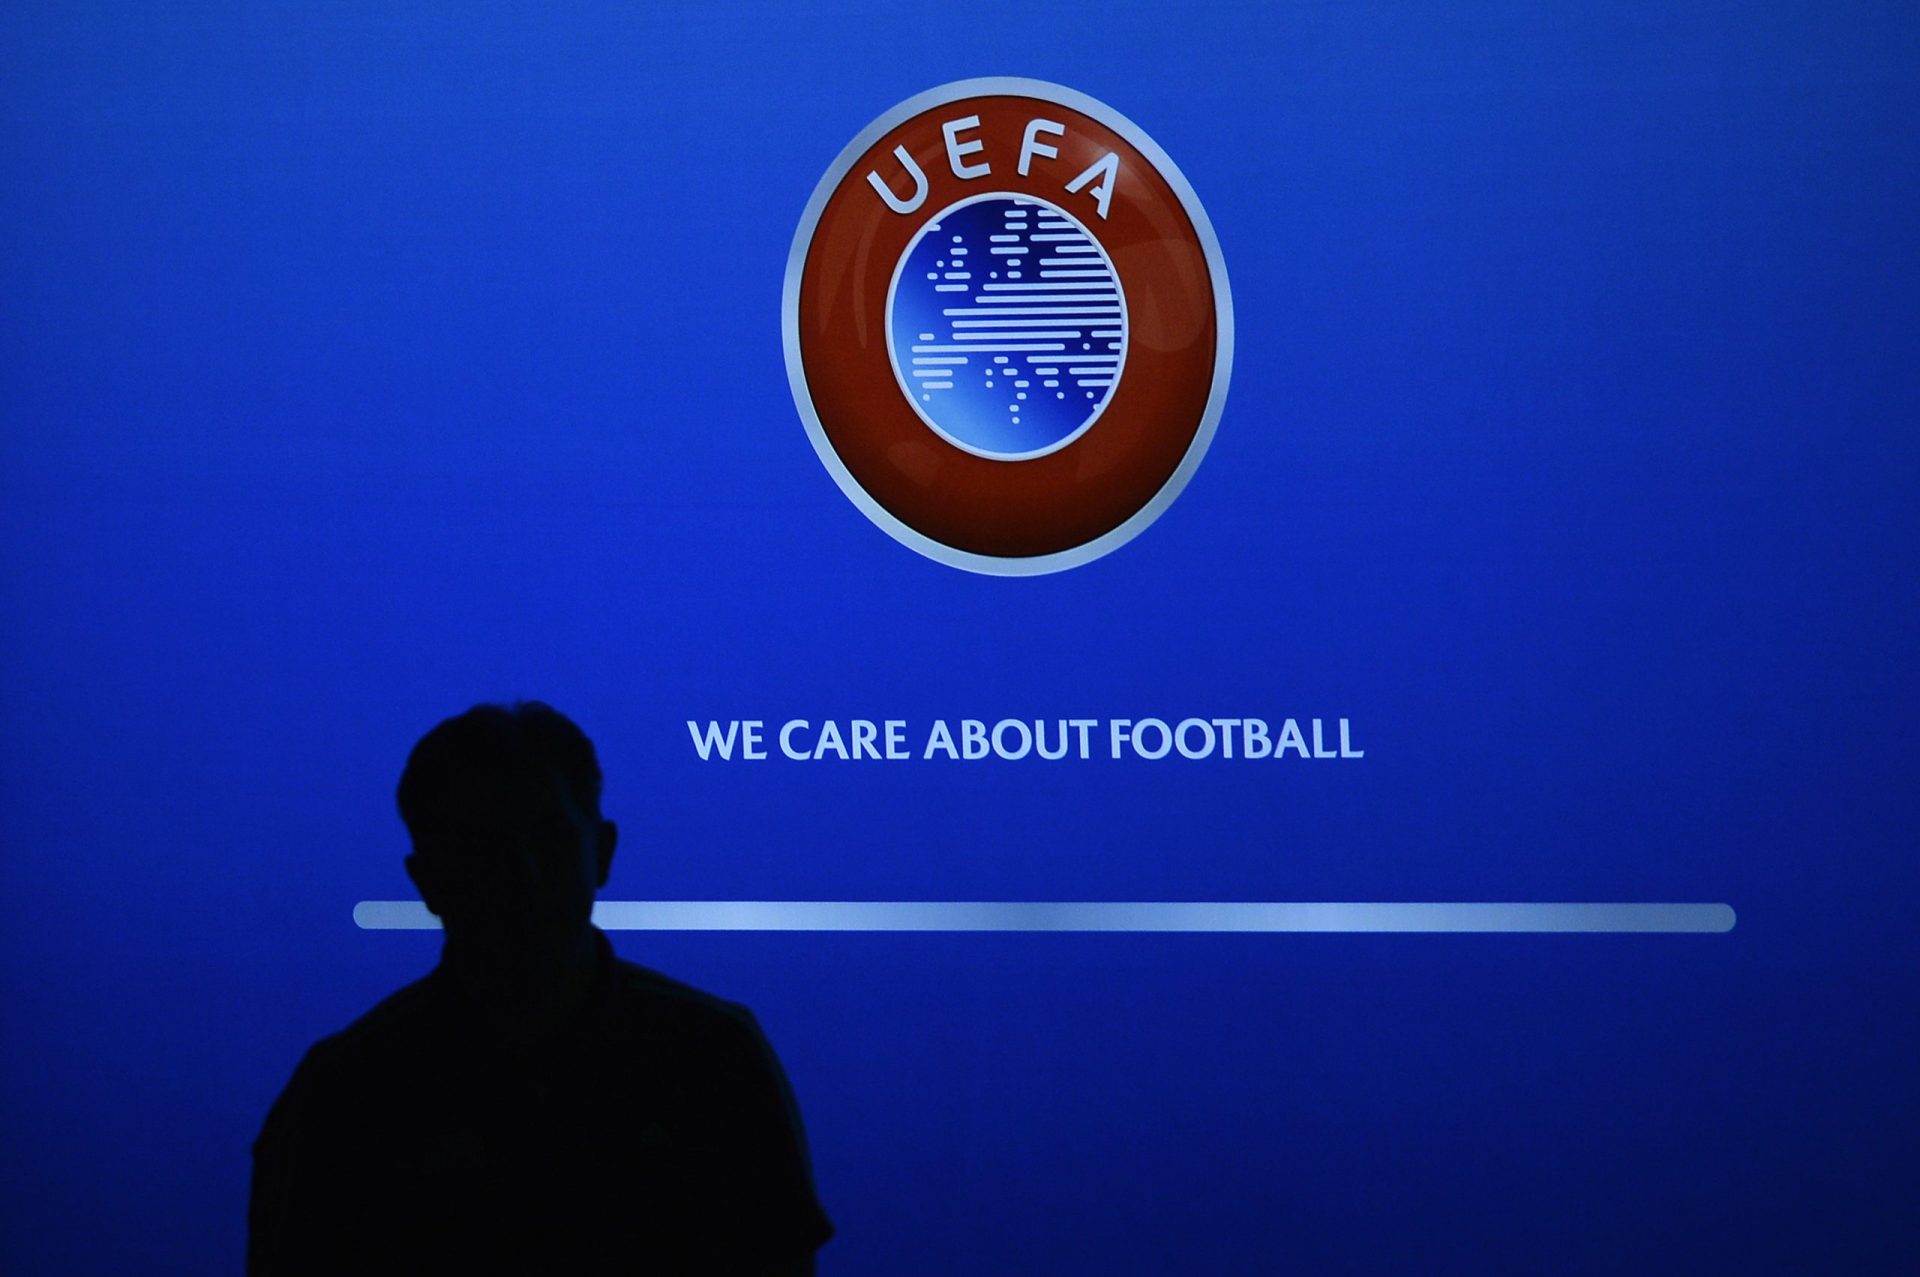 UEFA admite alterar locais dos jogos do Euro2020 para ter público nas bancadas